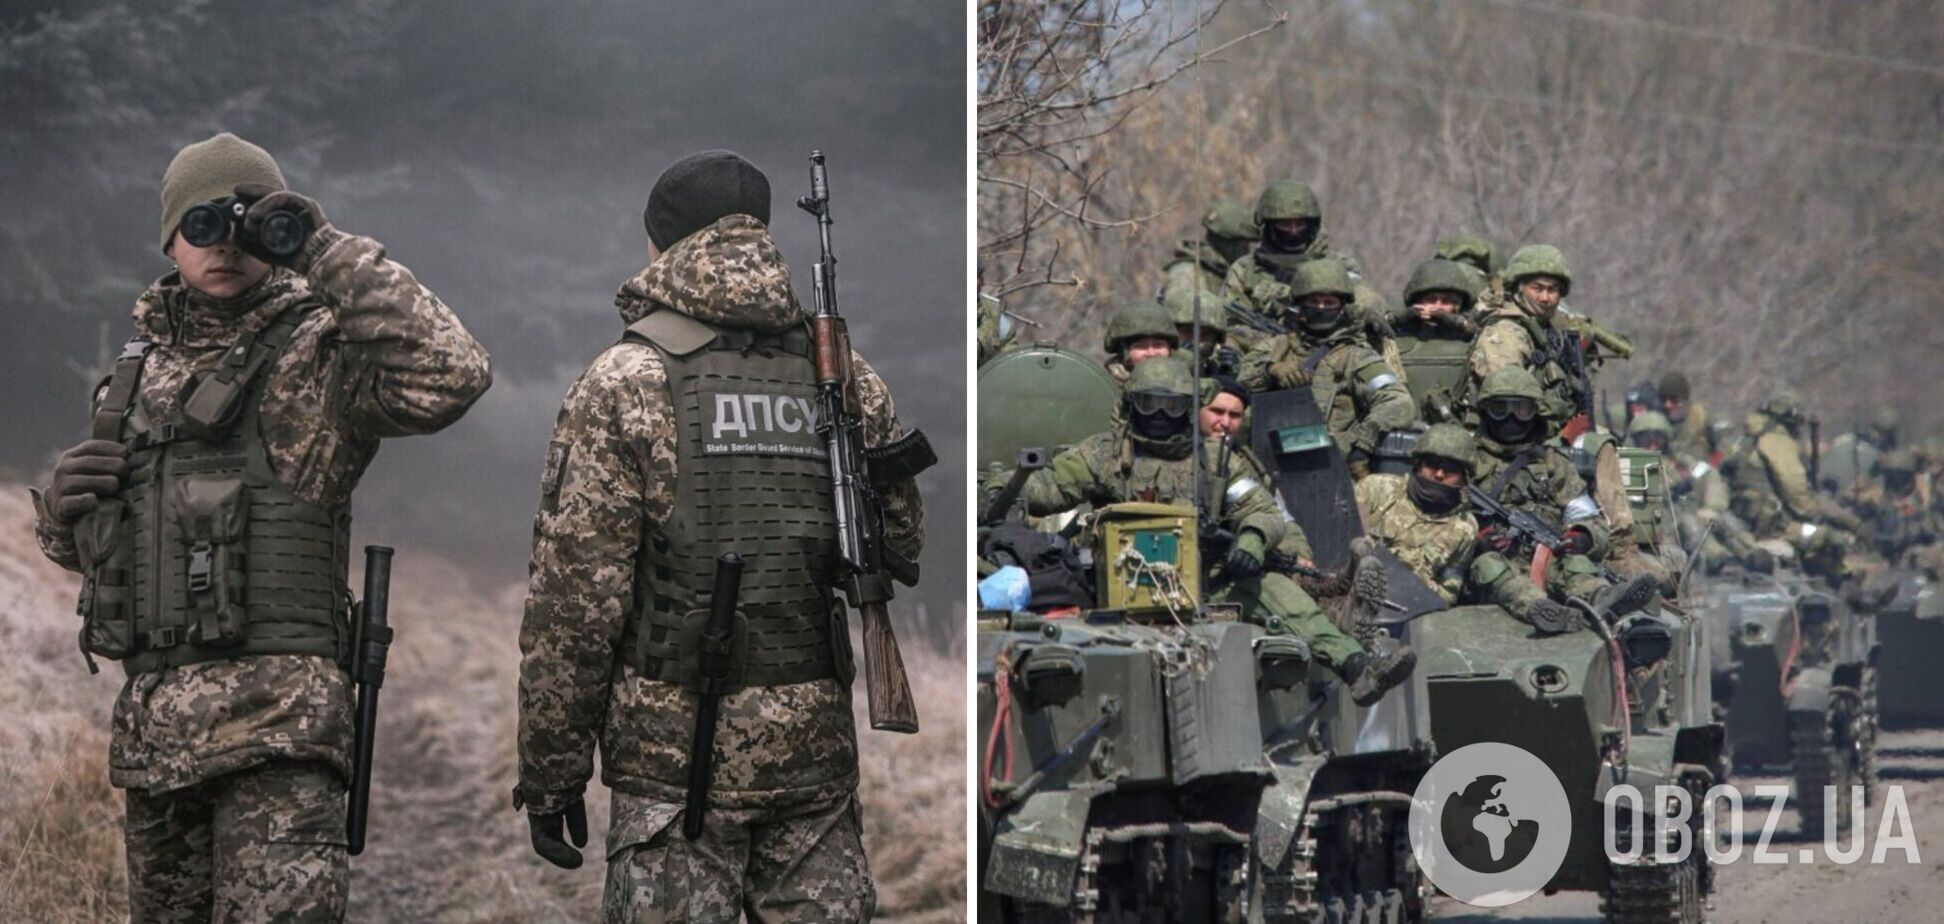 Для наступления недостаточно: в ГПСУ оценили собранные Россией силы в Беларуси